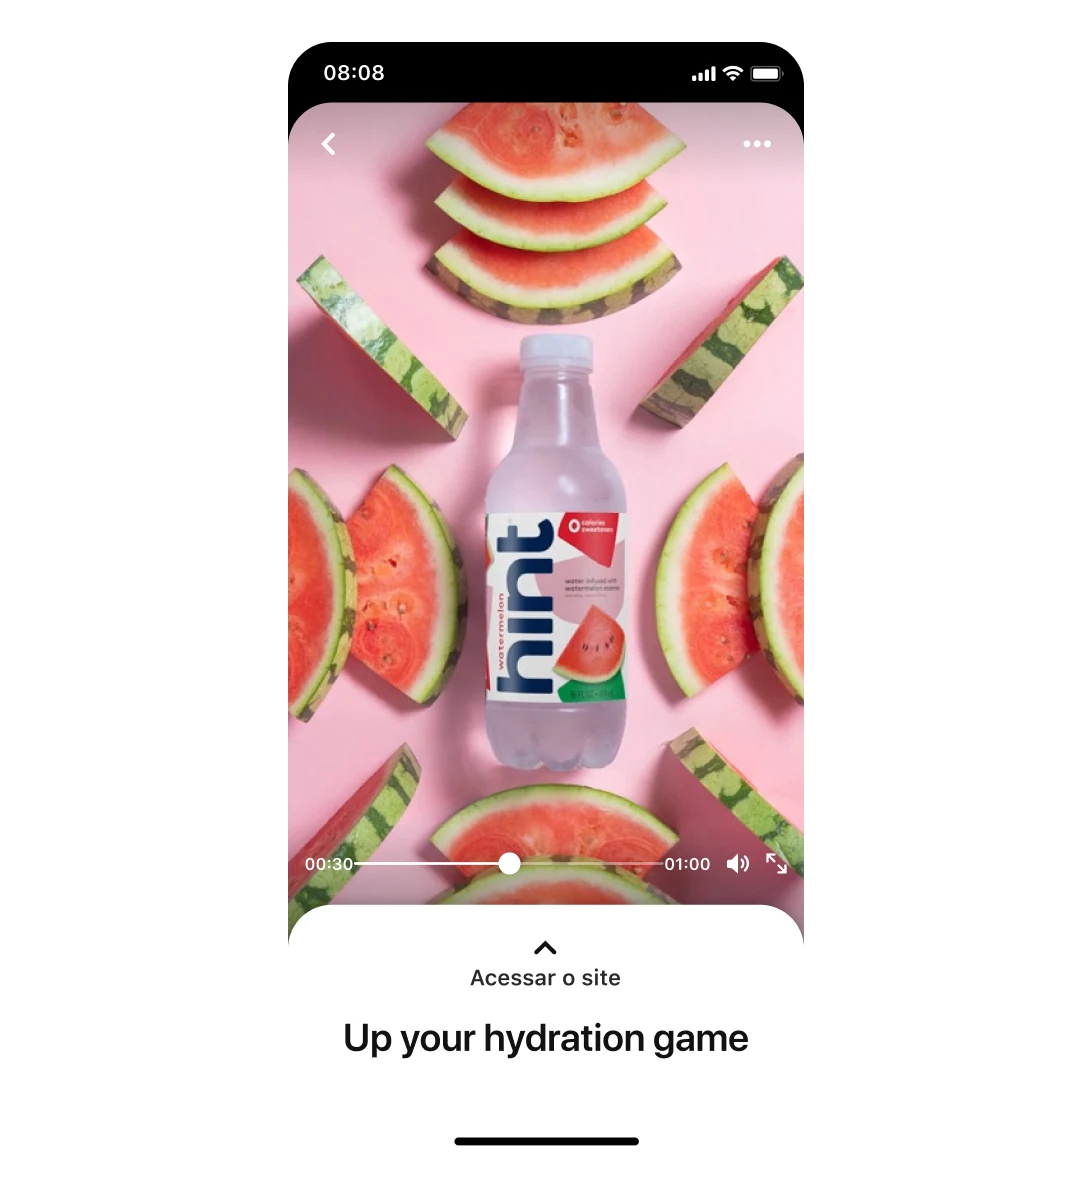 Tela de dispositivo móvel mostrando um anúncio Premiere Spotlight da hint que destaca a água aromatizada com sabor de melancia da marca com fatias da fruta ao redor. A legenda diz: "Foque a sua hidratação".